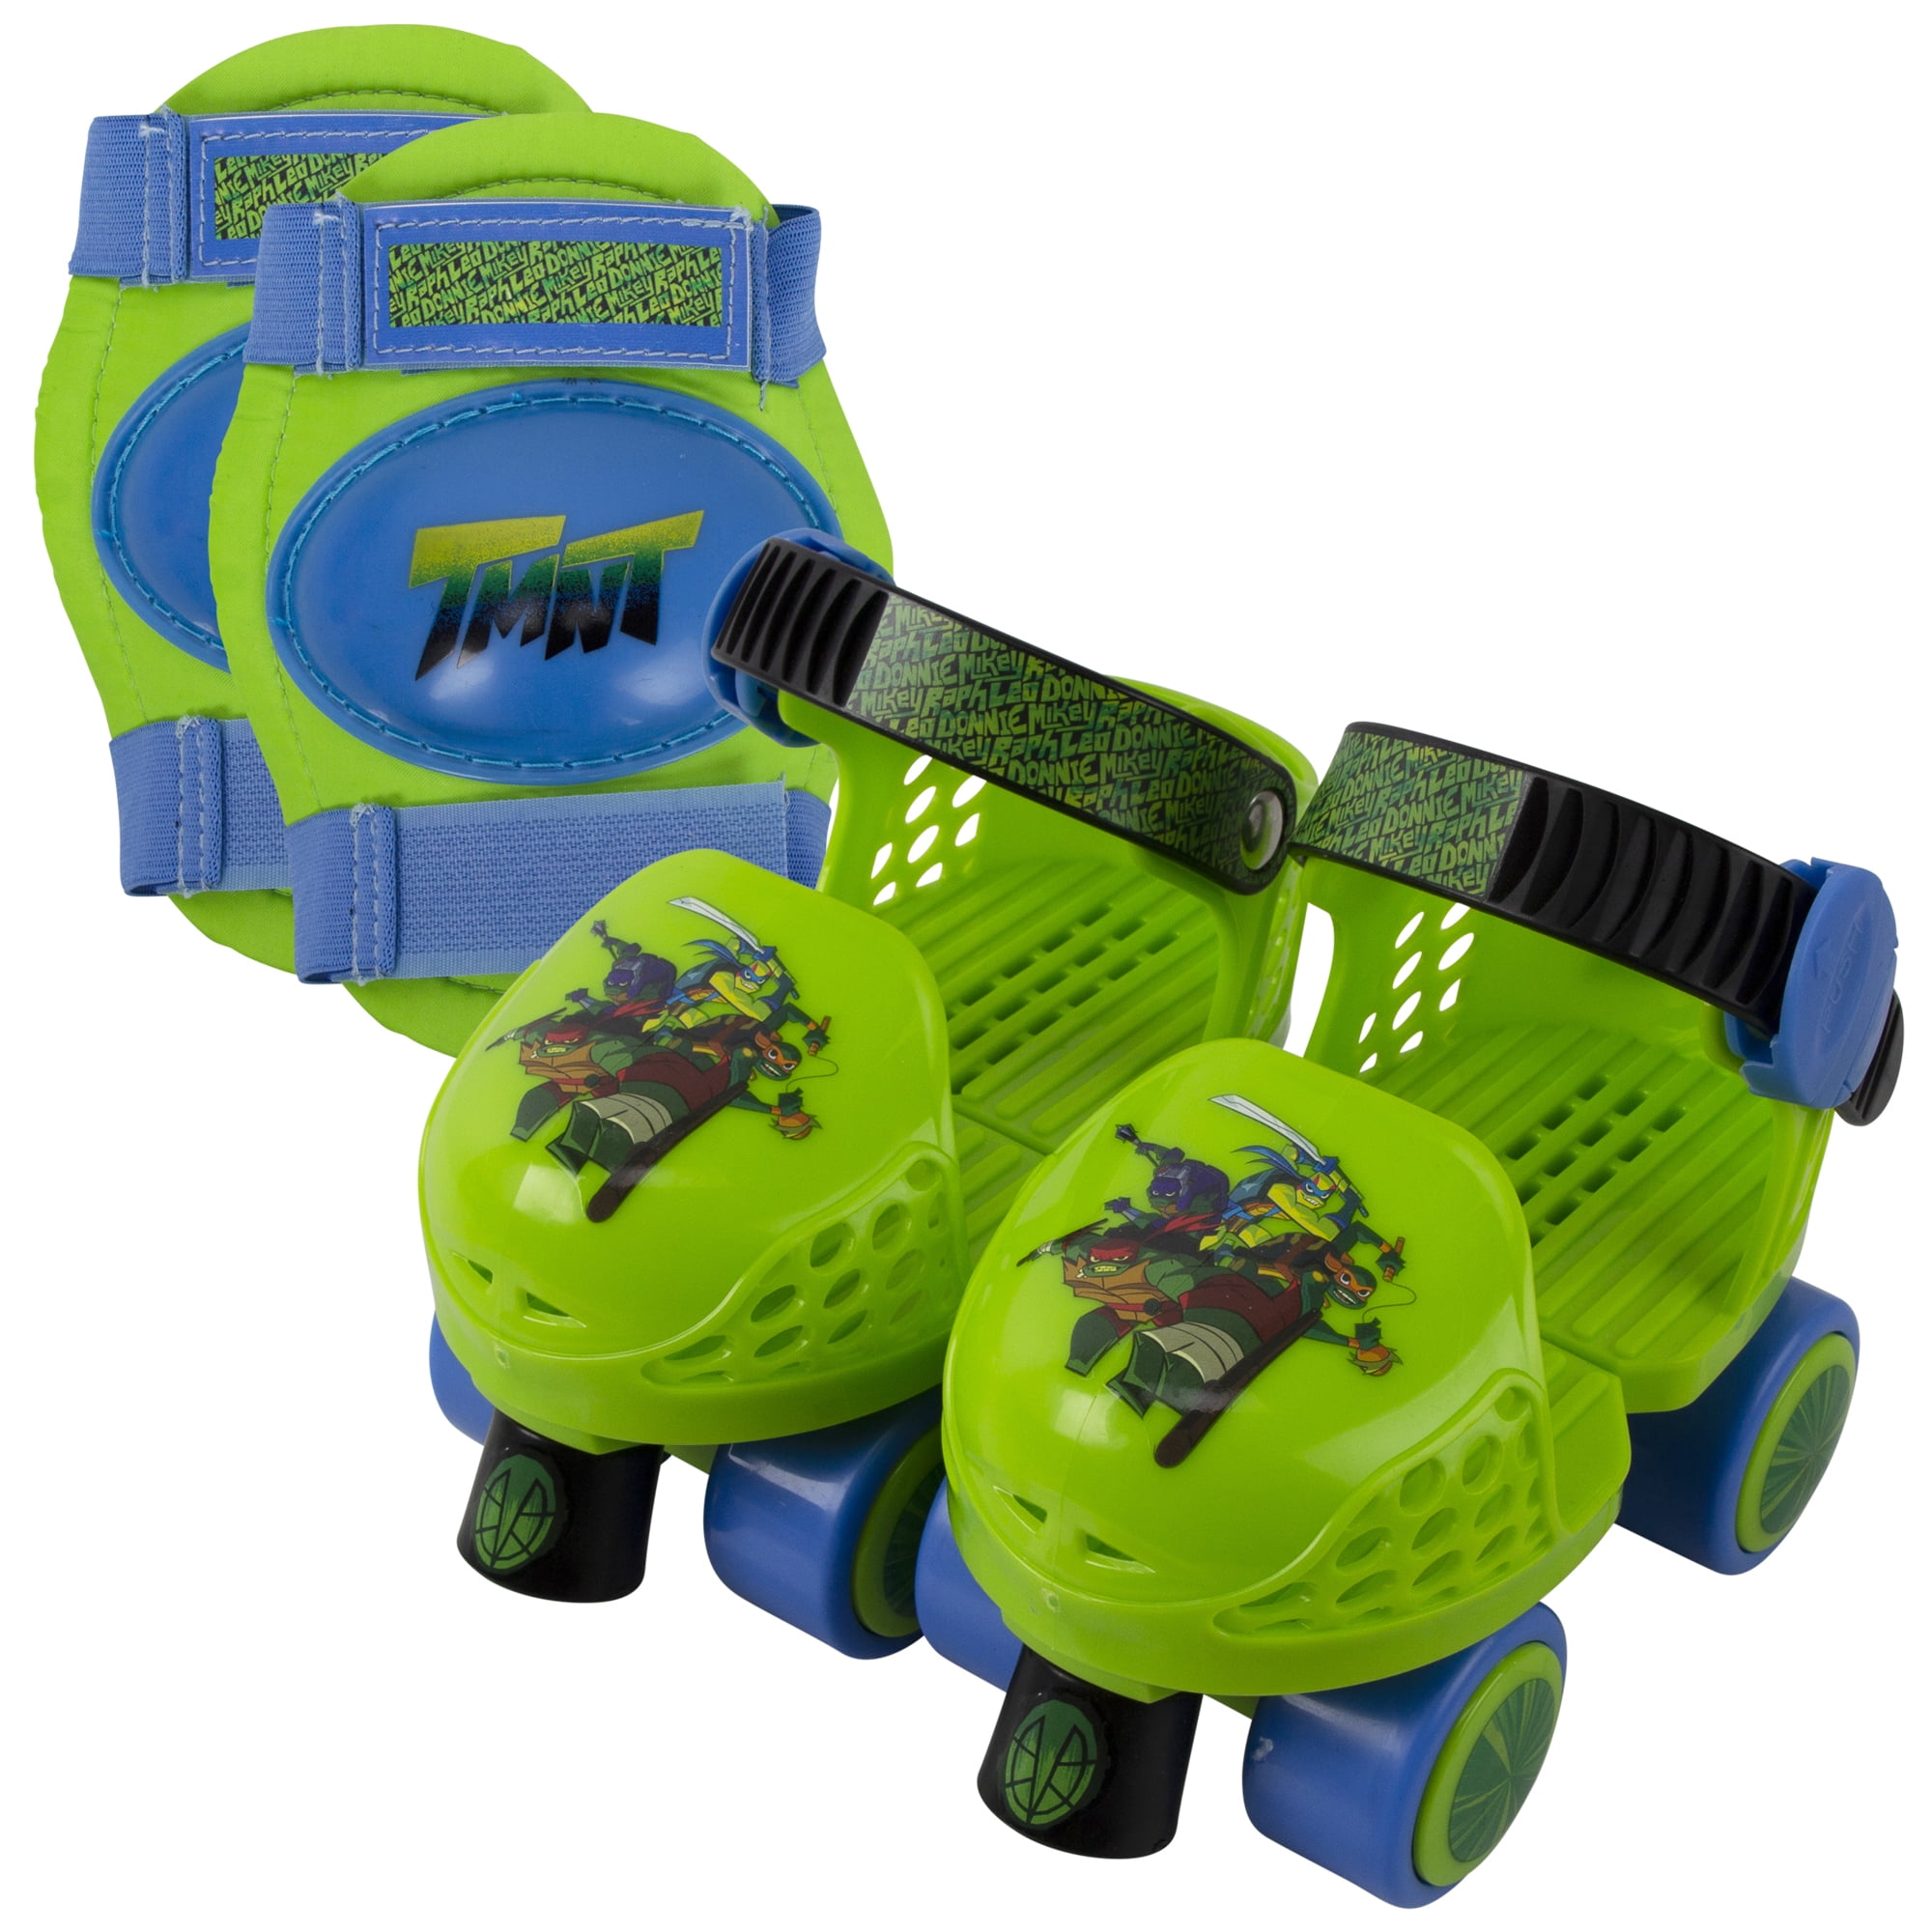 Teenage Mutant Ninja Turtles Rollerskate with Knee Pads Junior Size 6-12 